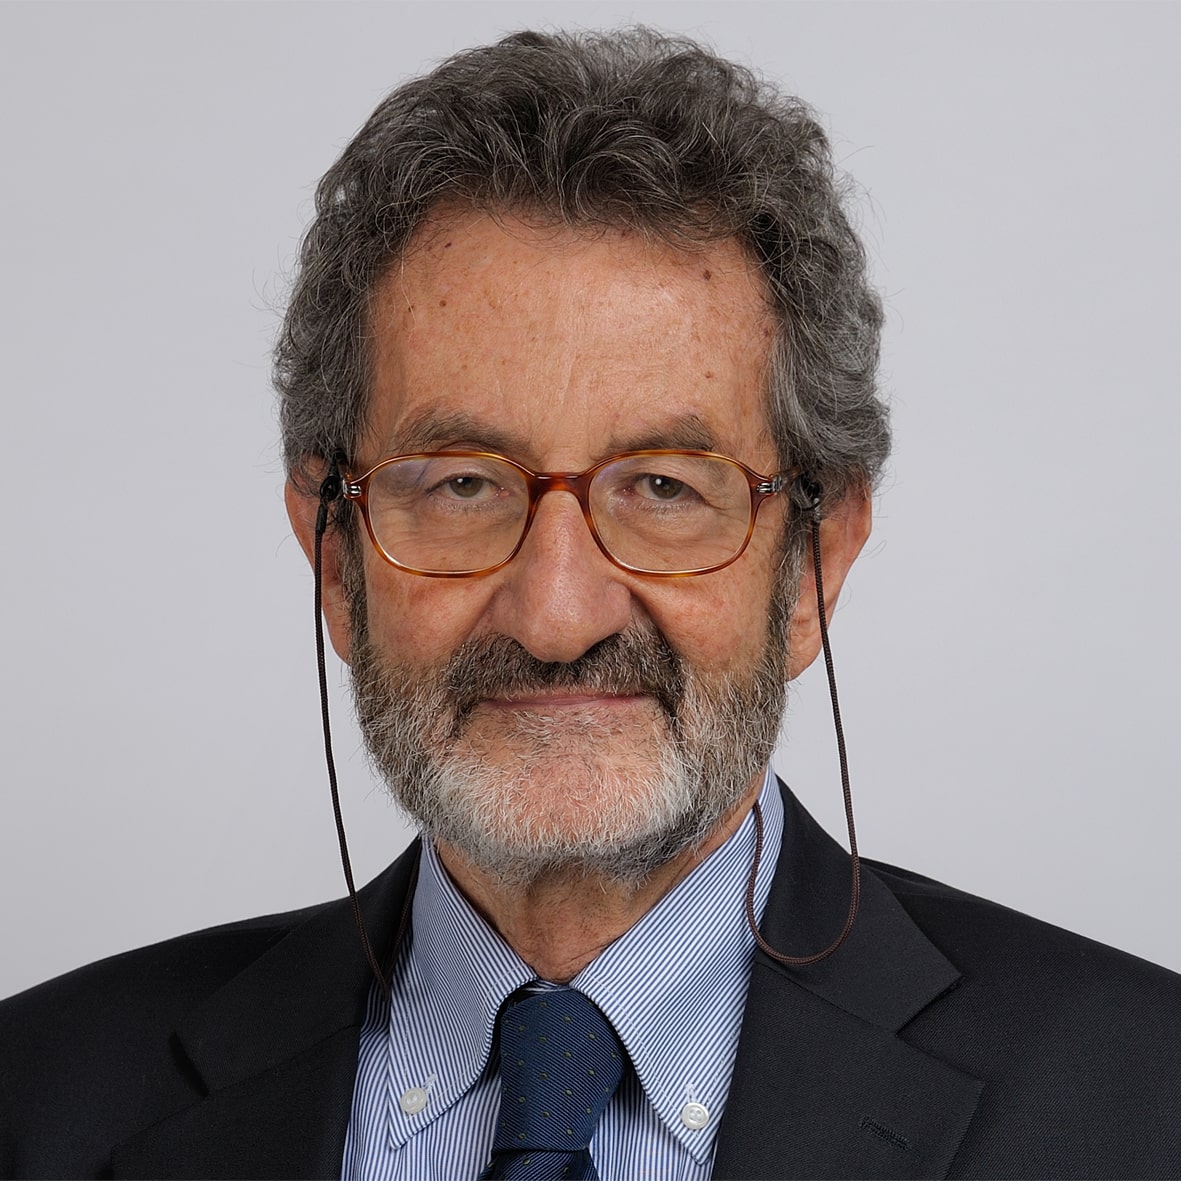 Maurizio Del Fante